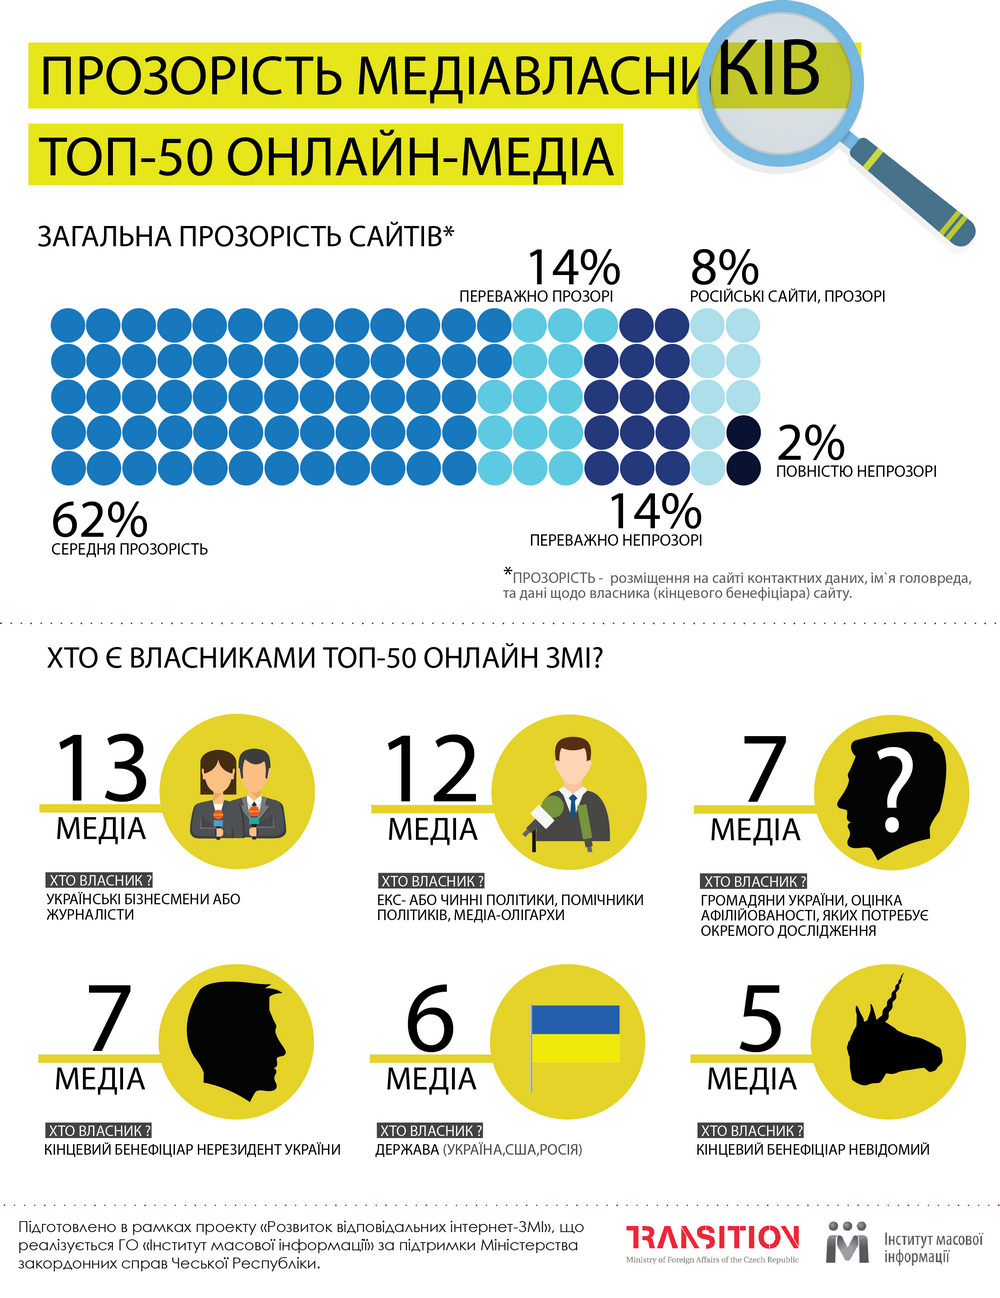 Тільки 14% найпопулярніших інтернет-ЗМІ в Україні вказали інформацію про контакти, головного редактора і власника